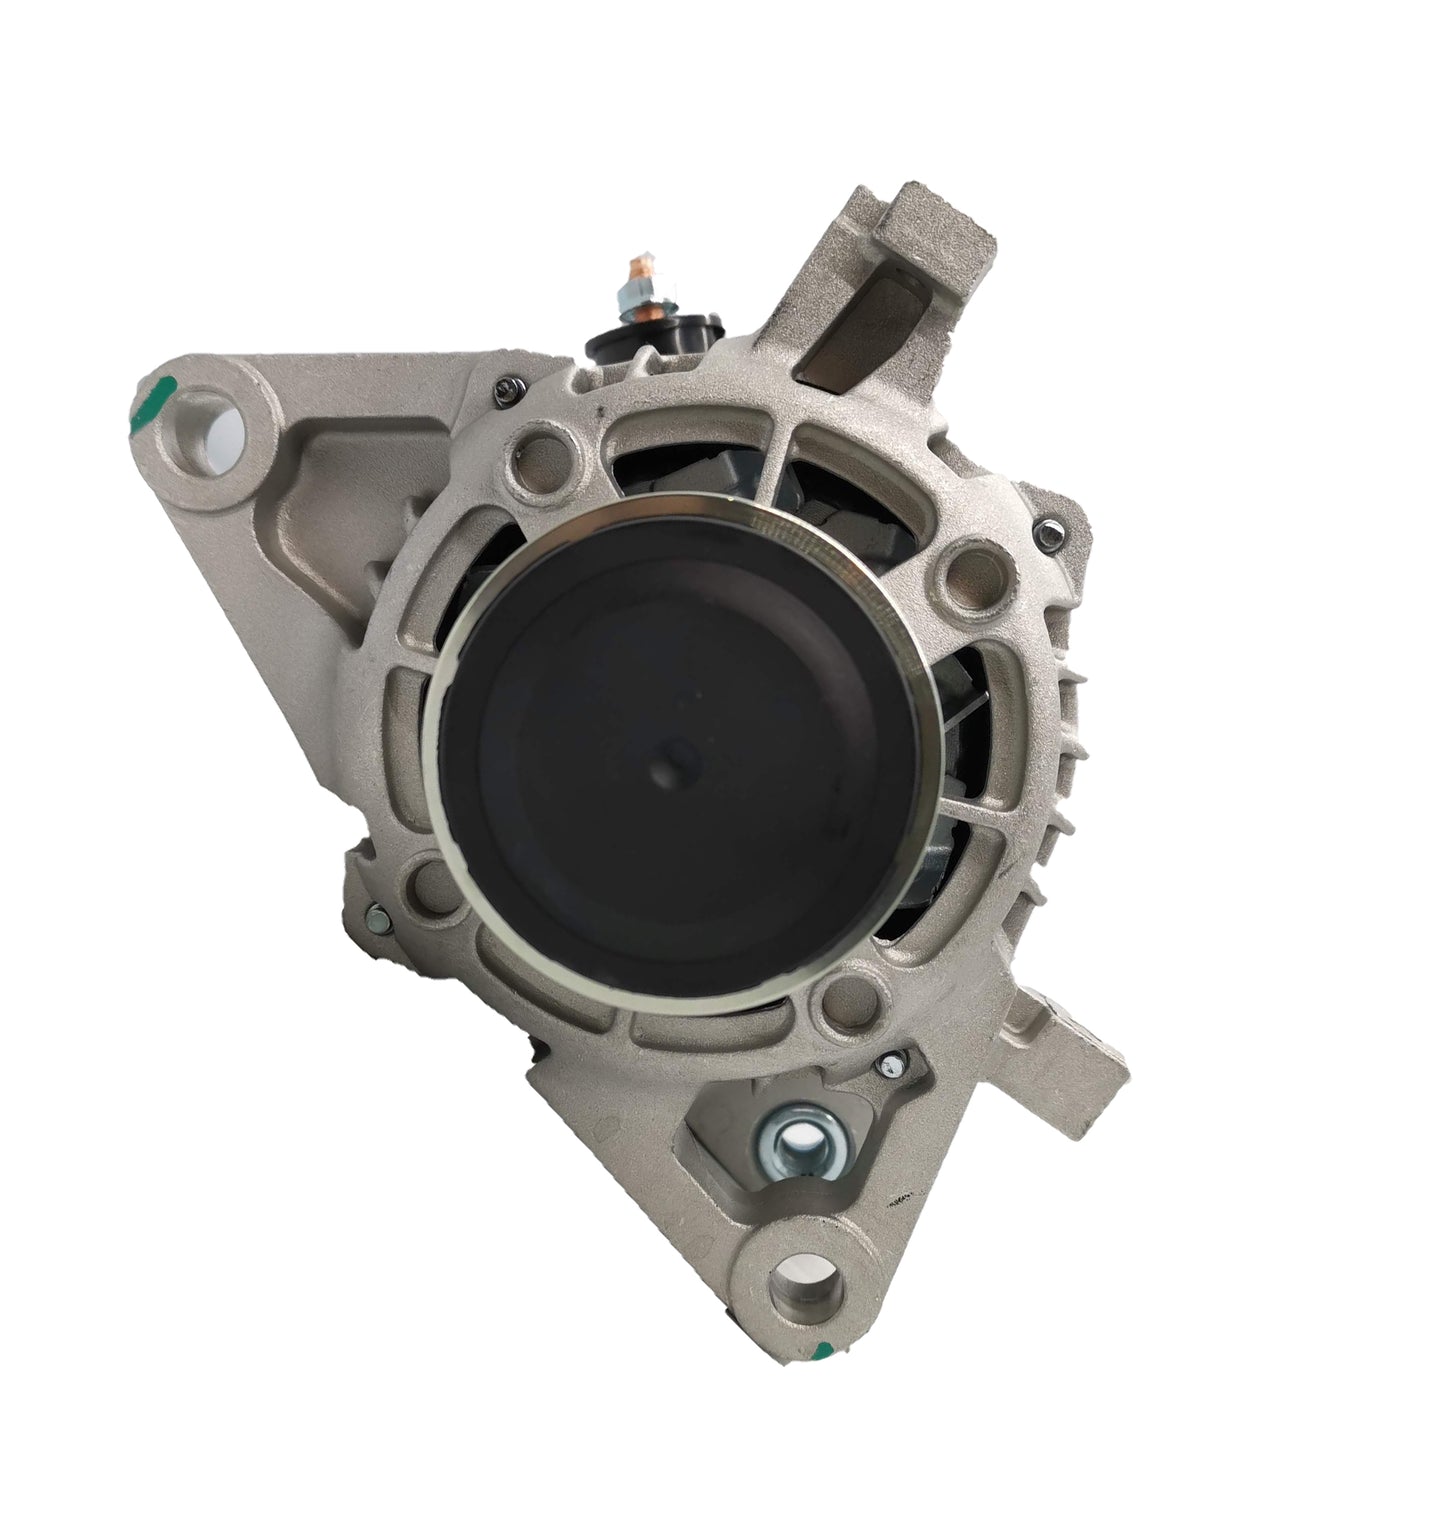 New Alternator for Toyota Hilux Turbo Diesel 2.8L GUN126R 1GD-FTV 2GD 2015-Now